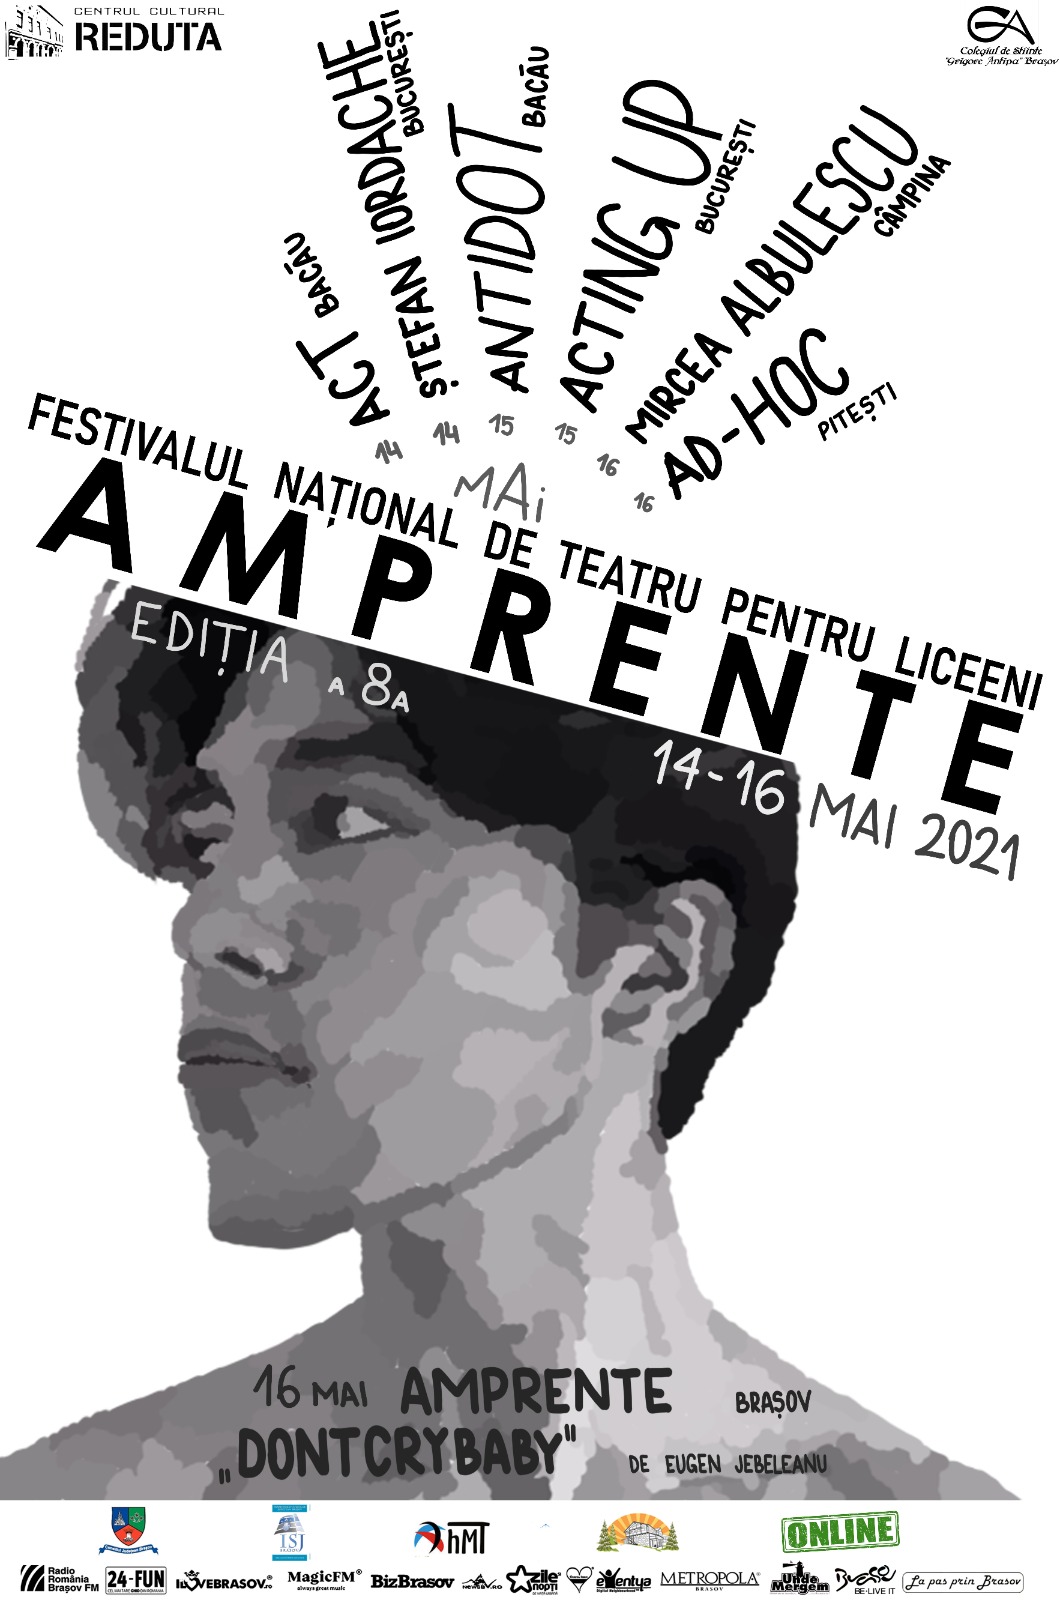 Centrul Cultural Reduta prezintă Festivalul Naţional de Teatru pentru Liceeni “AMPRENTE”, 14-16 mai